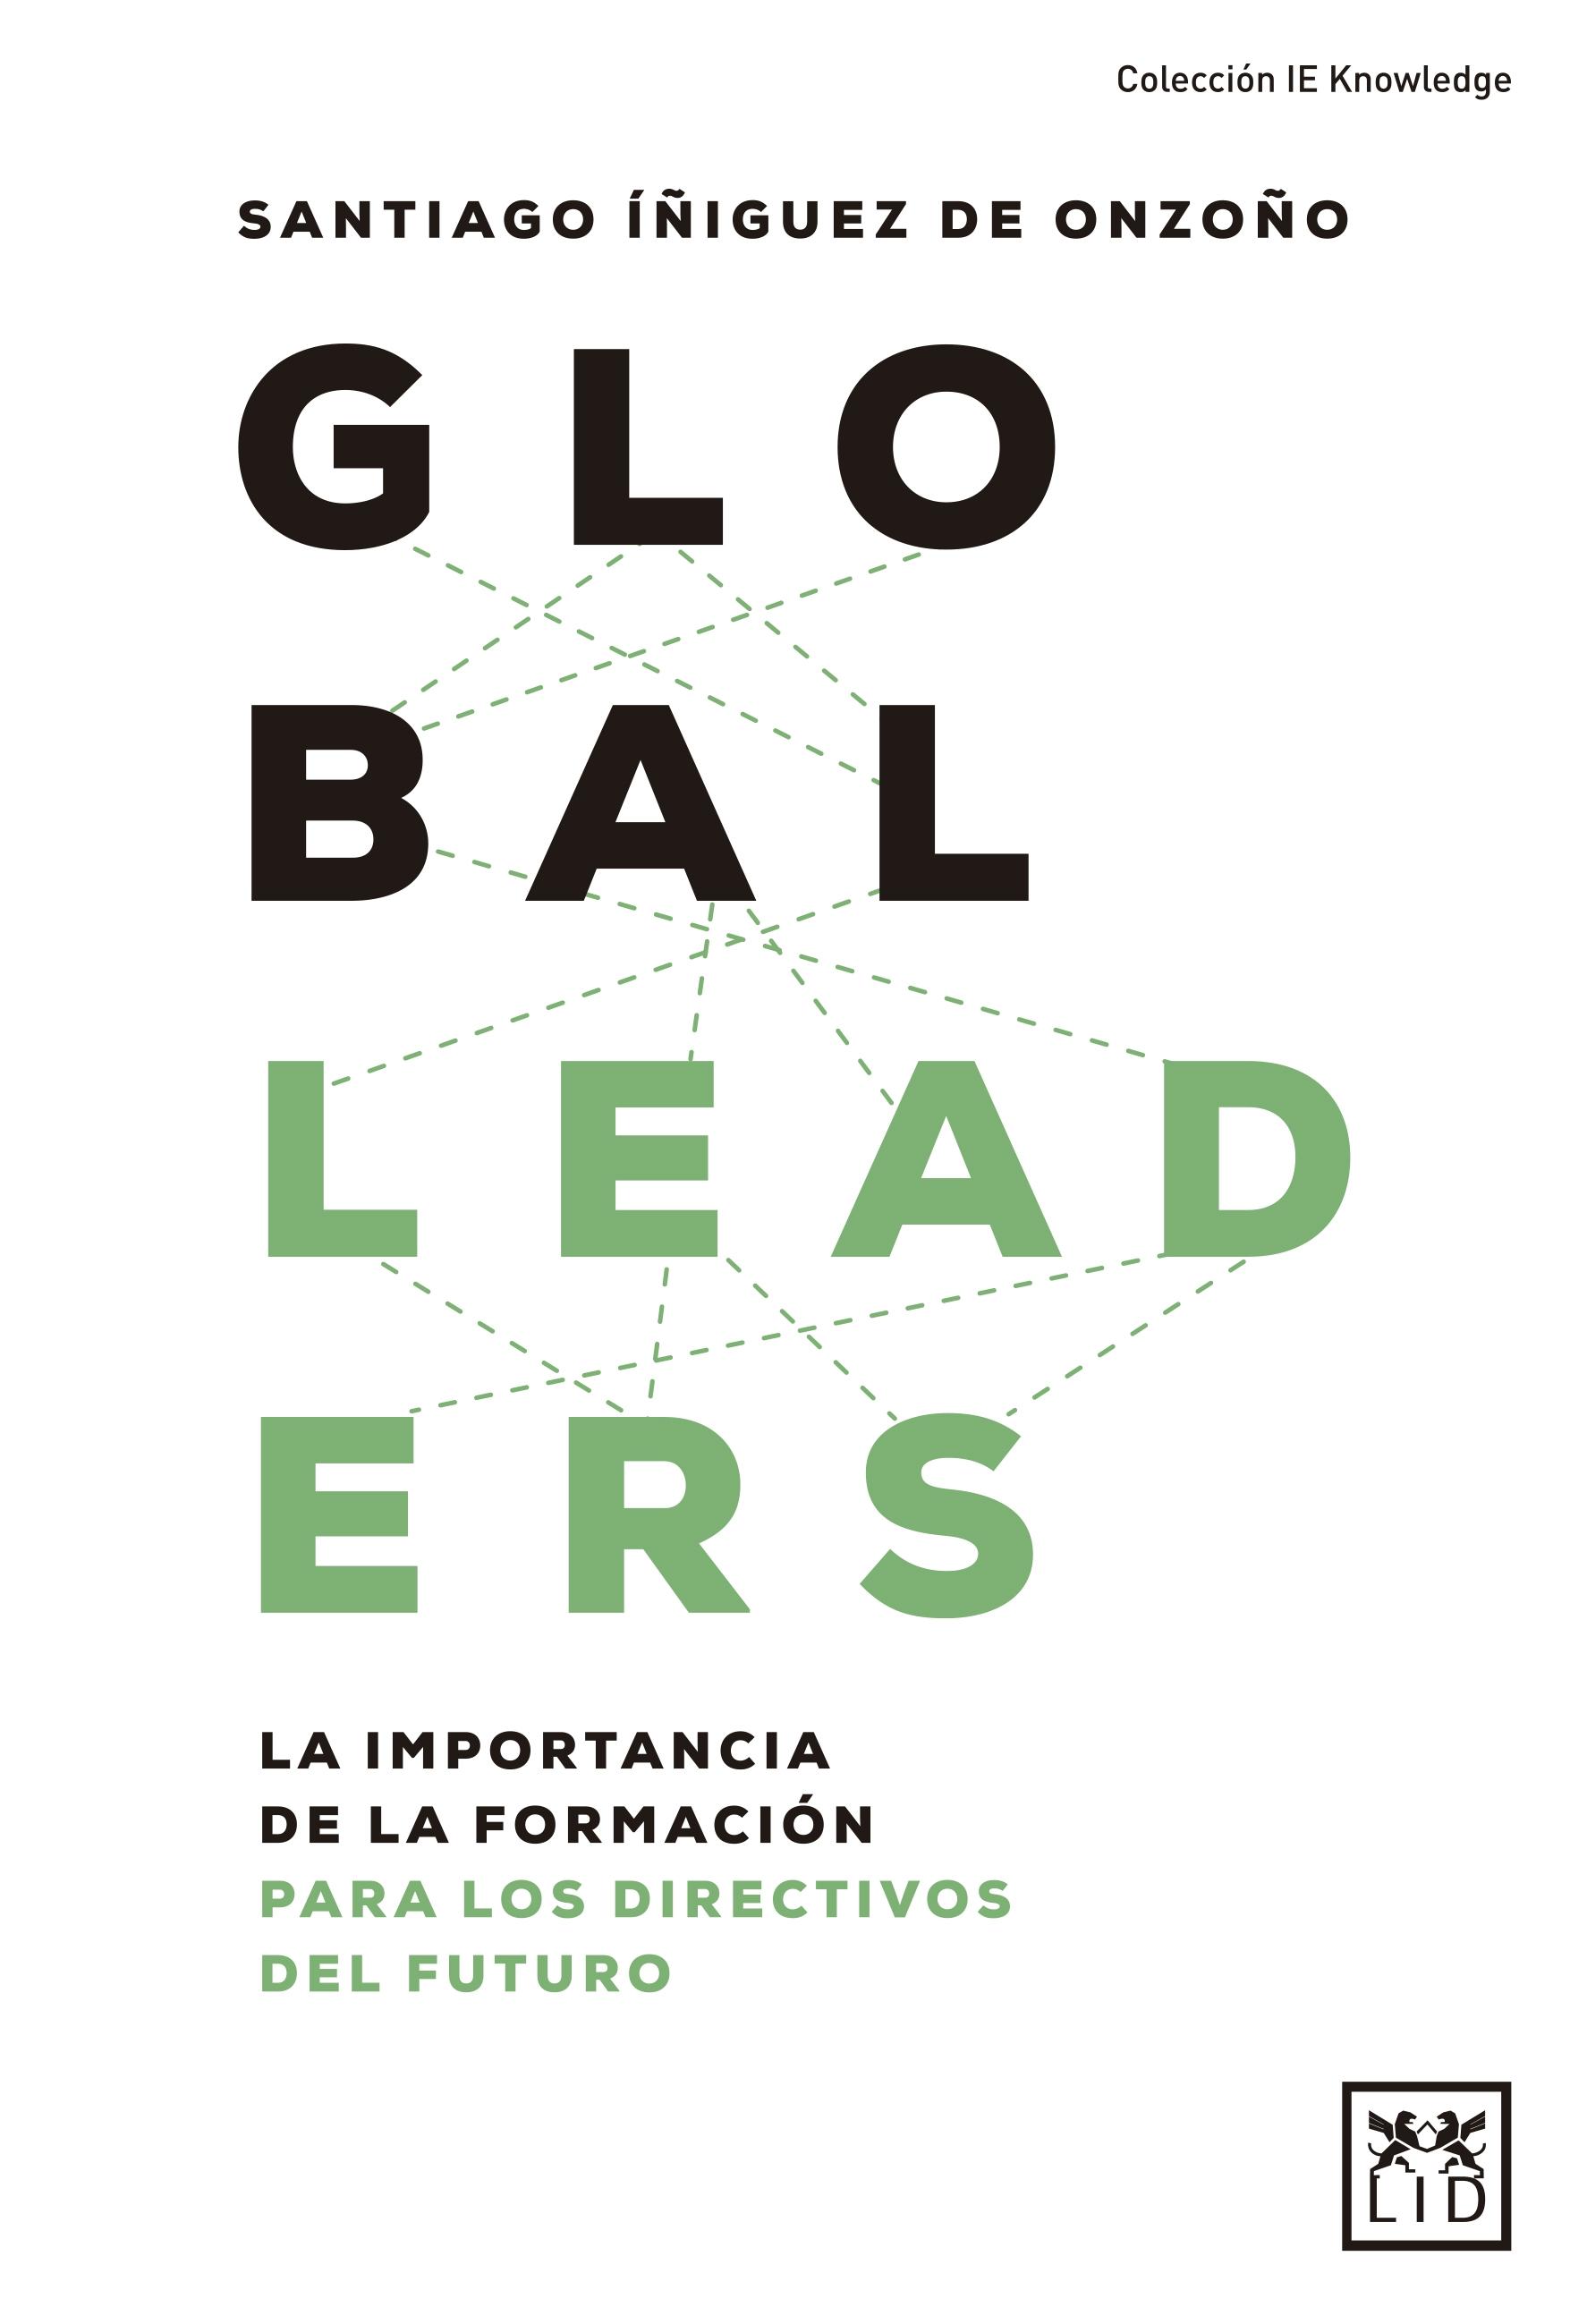 Global Leaders "La importancia de la formación para los directivos del futuro". 